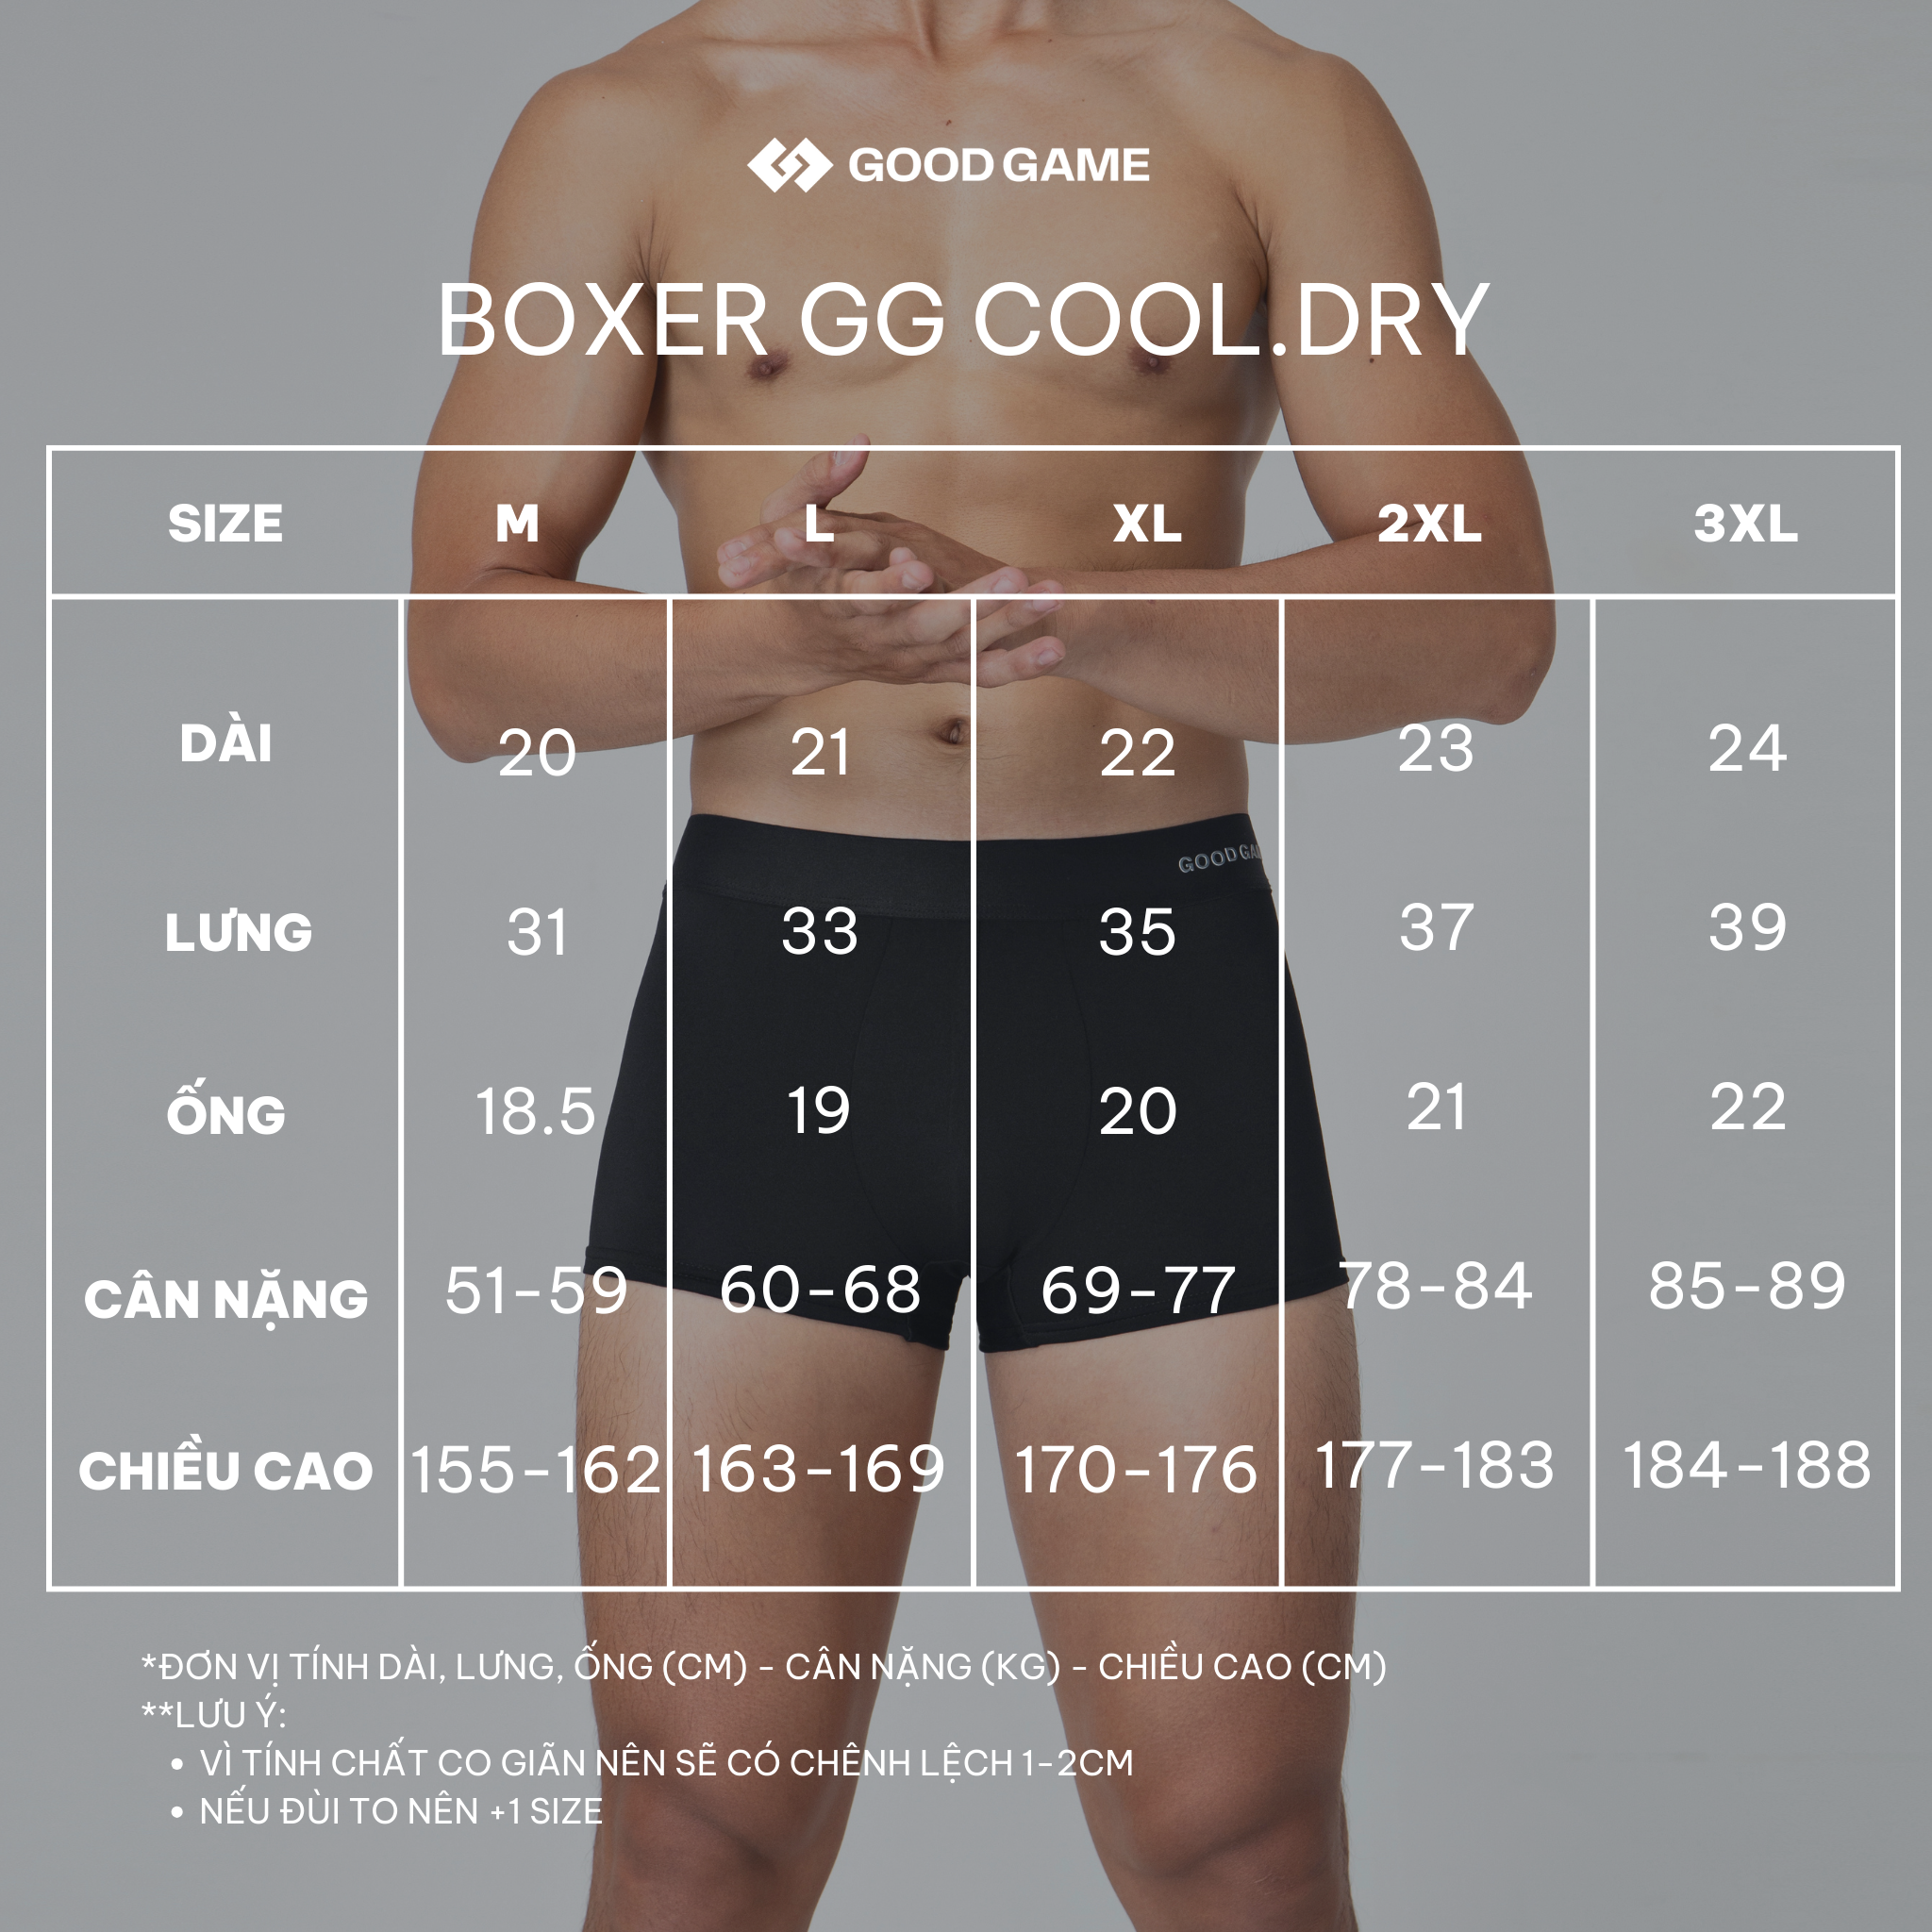  Quần lót nam Cool.Dry Boxer Good Game (XANH NAVY) 